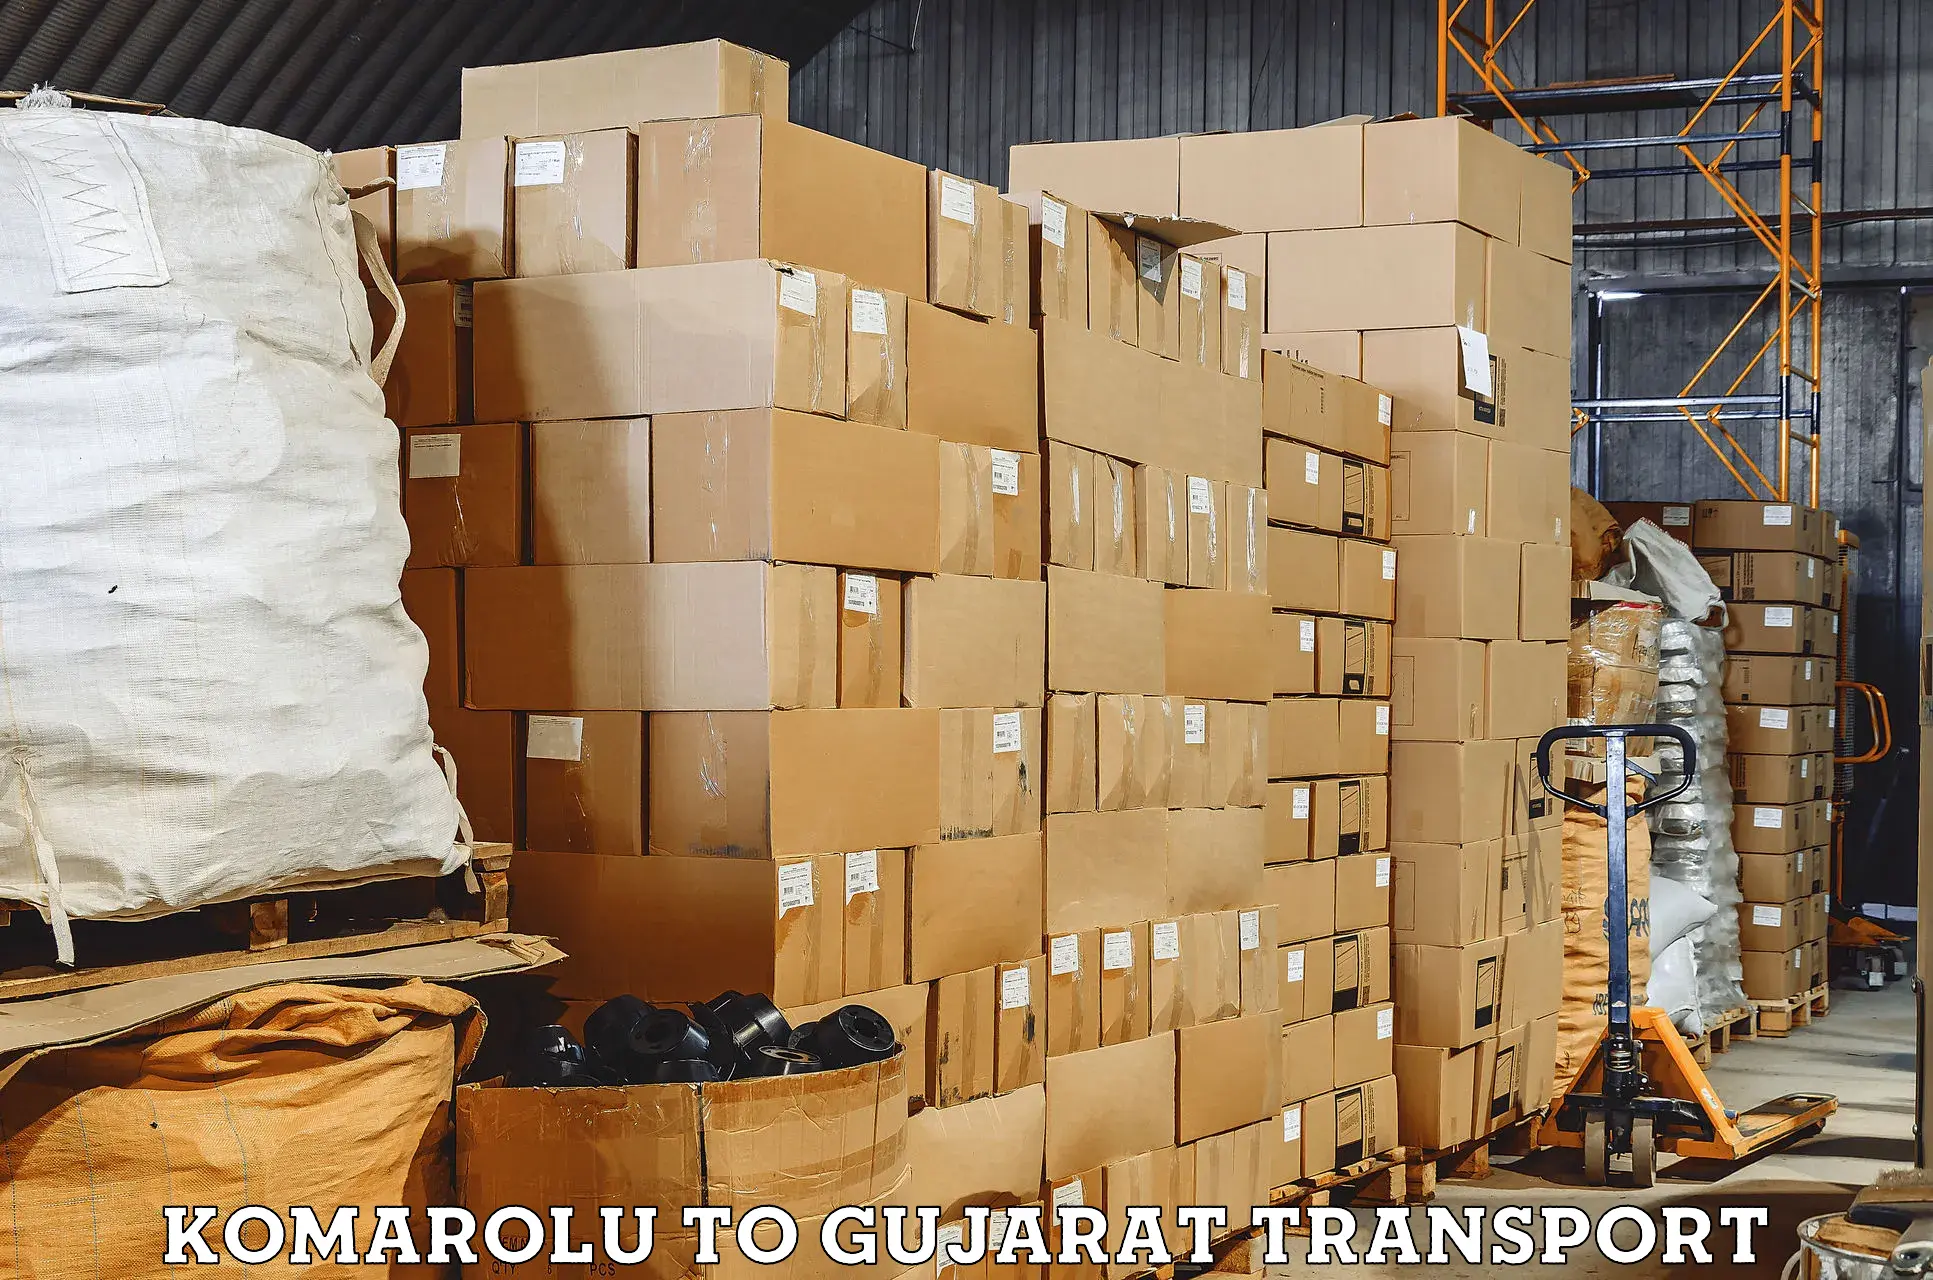 Two wheeler parcel service Komarolu to Gujarat